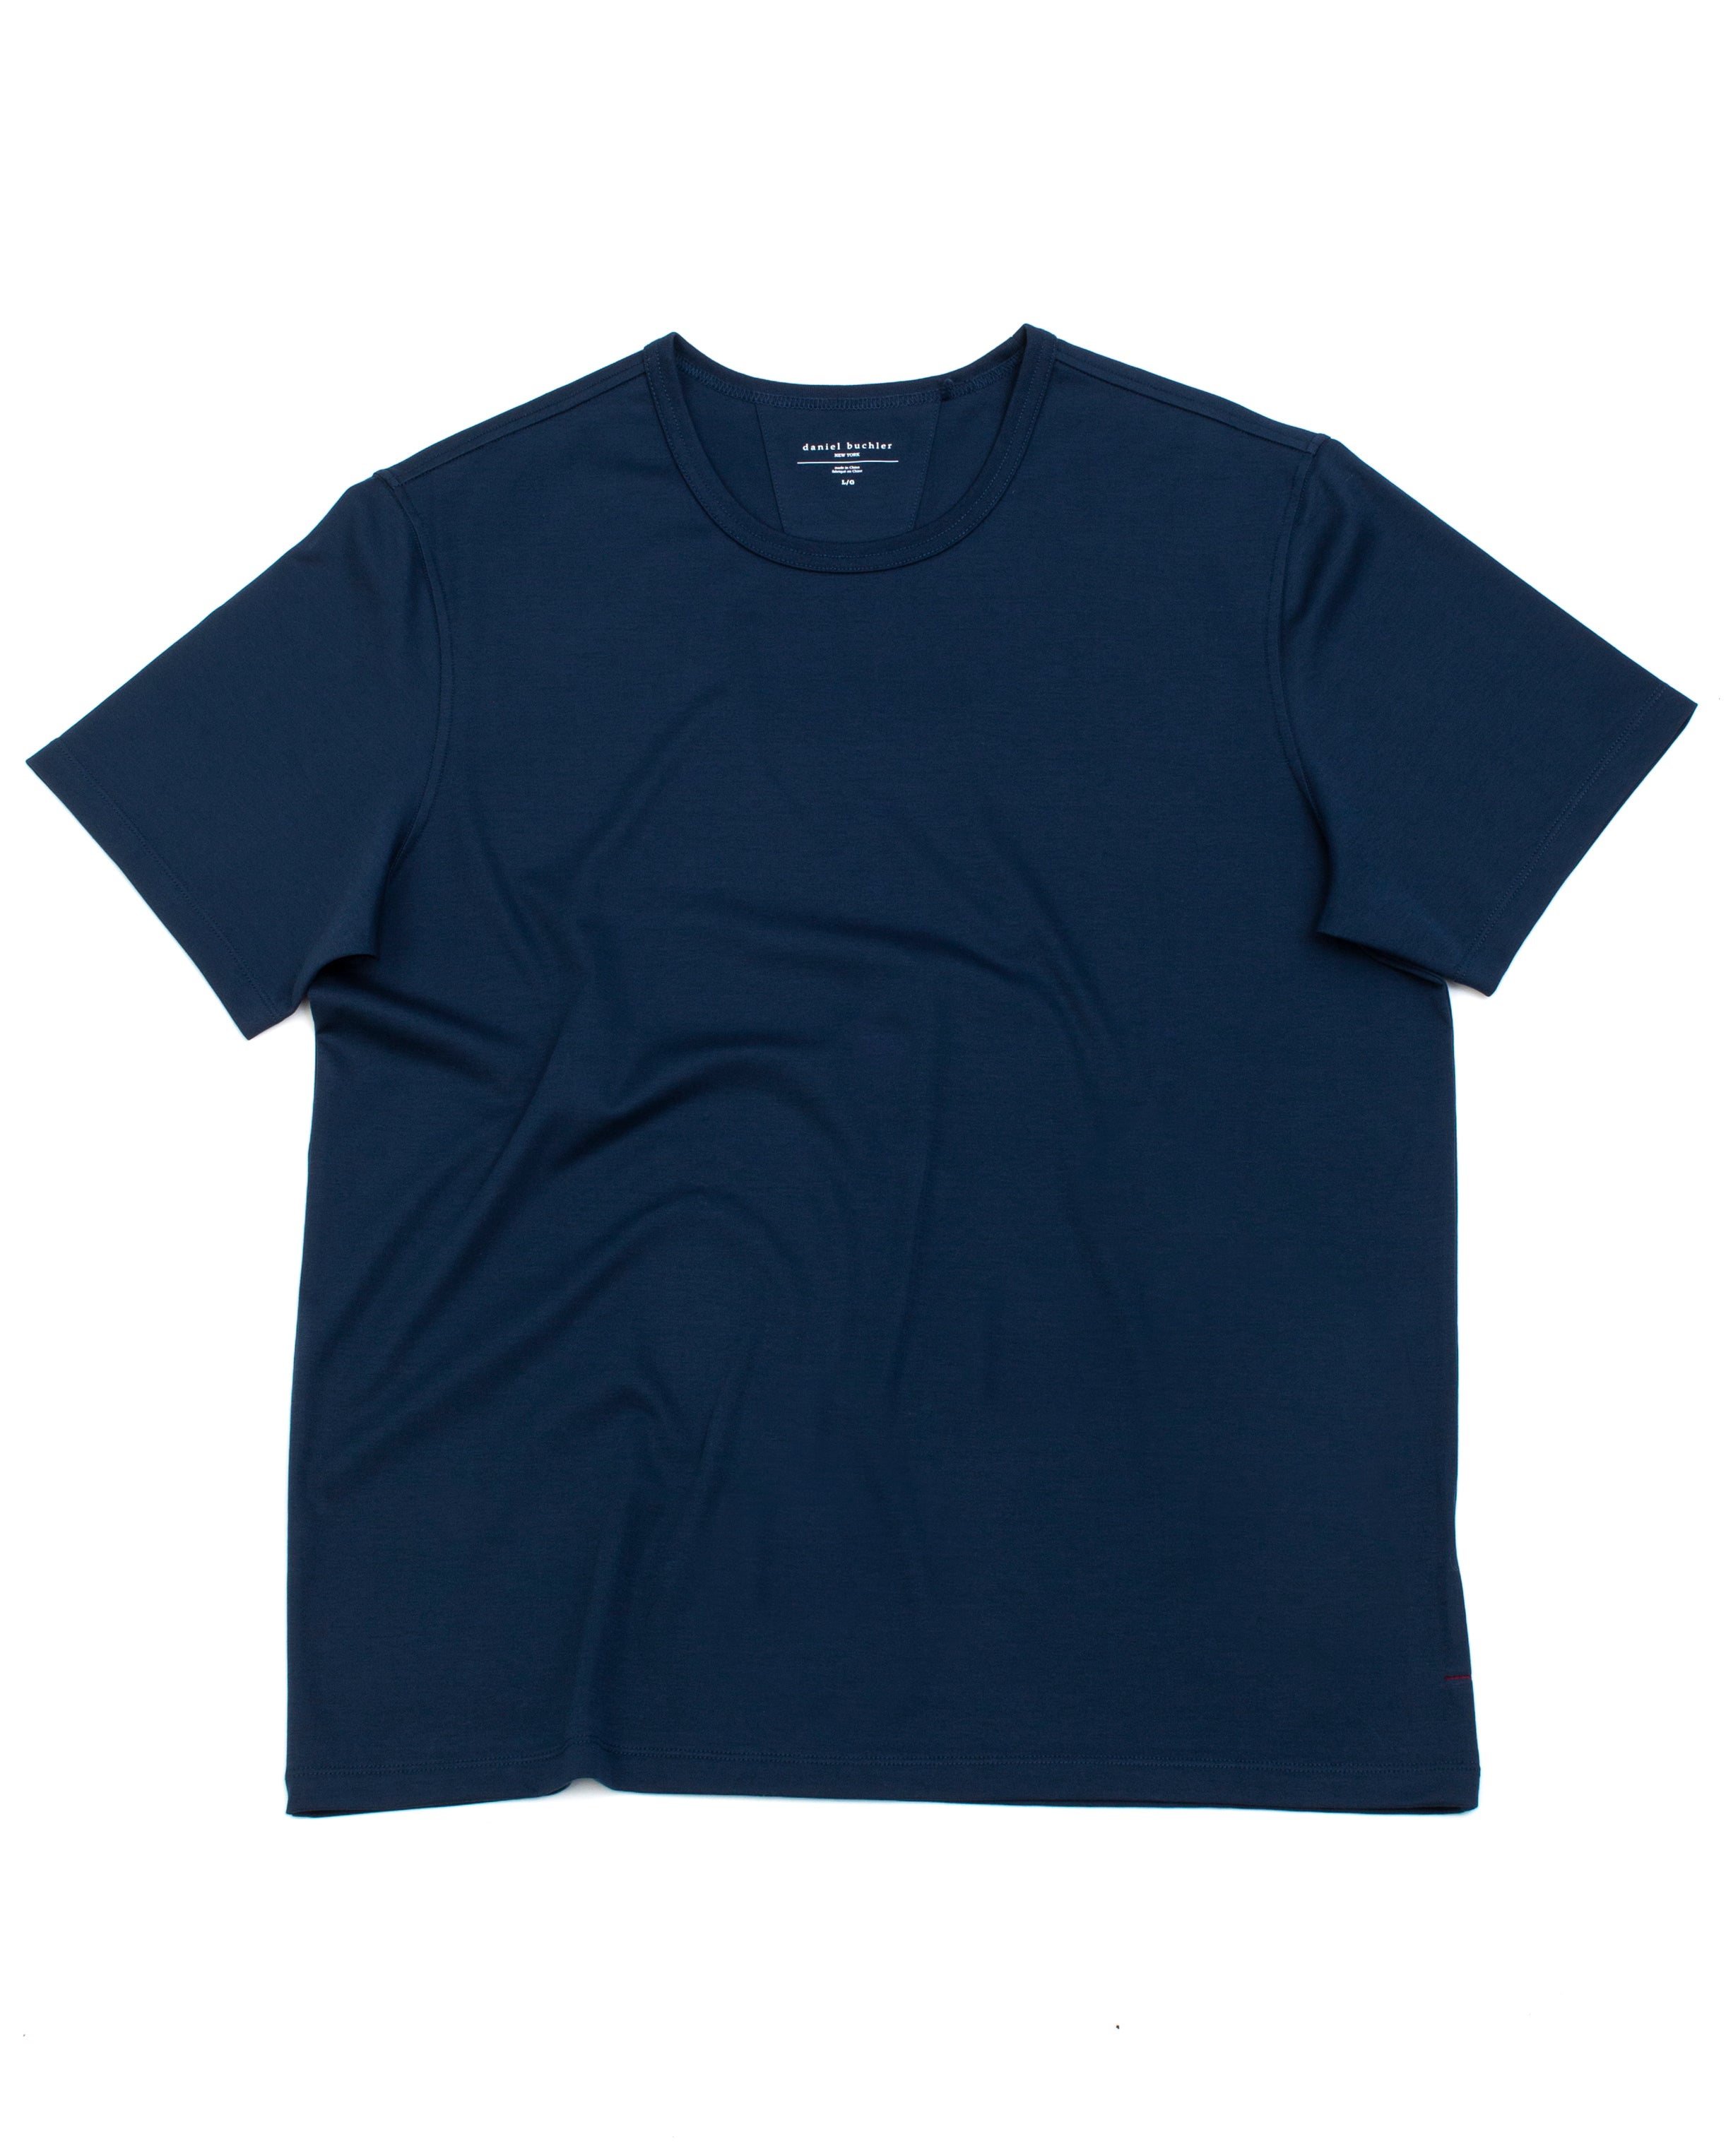 Super Fine Cotton/Spandex Short Sleeve - Dust Blue